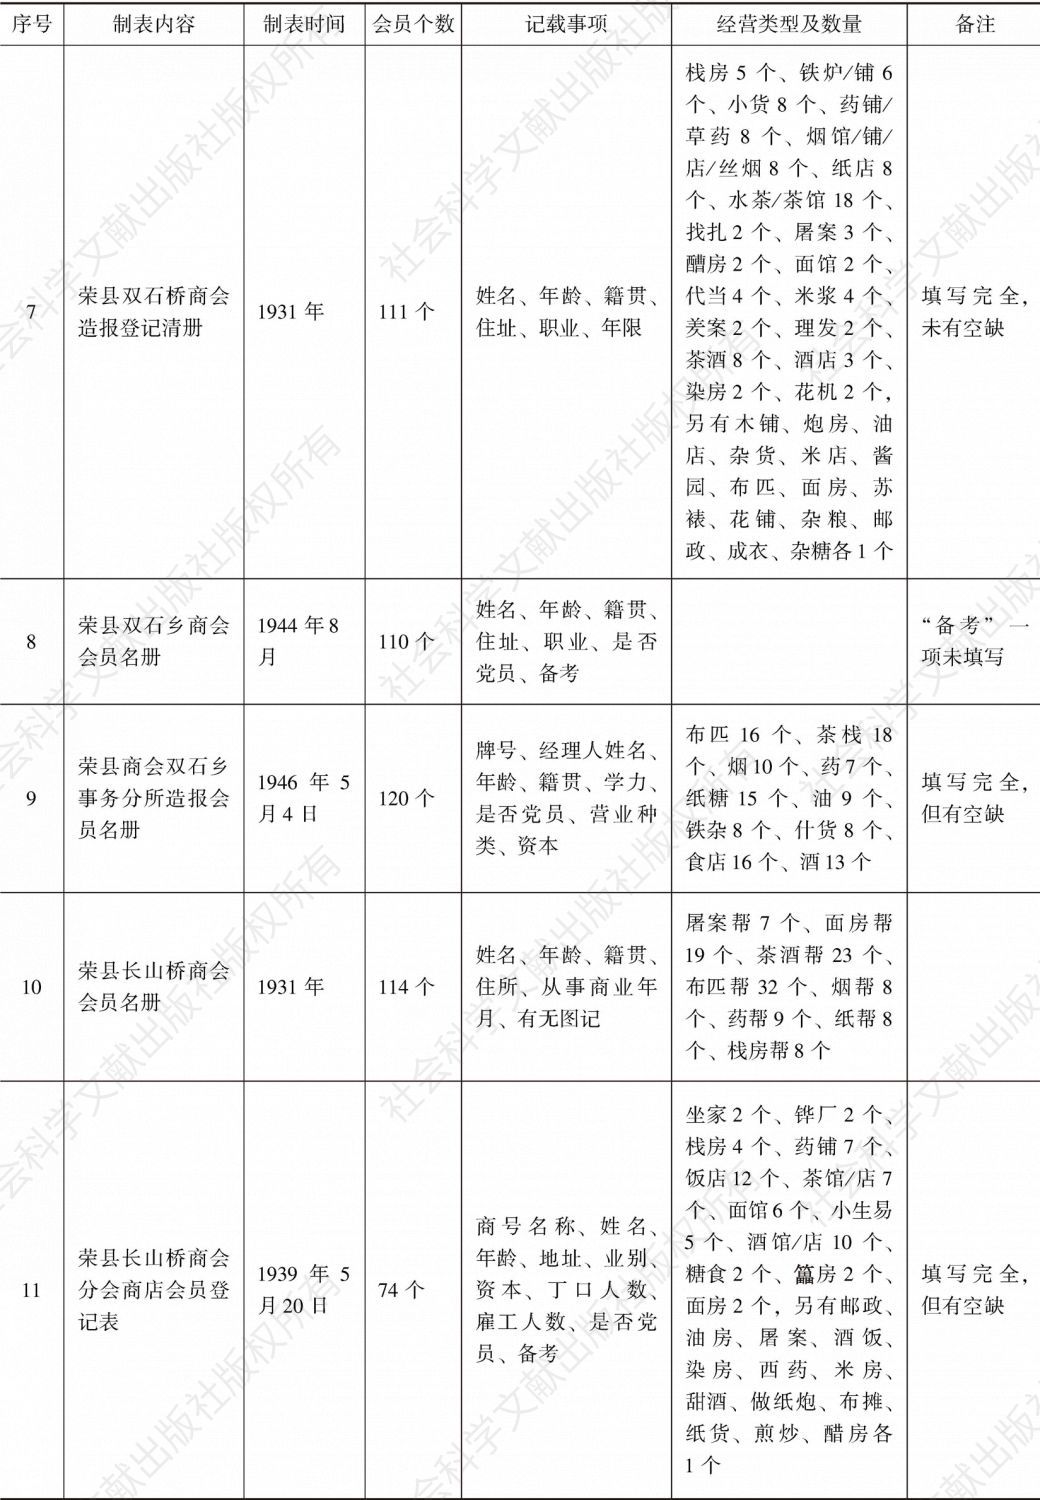 荣县商会事务分所造报名册汇编-续表2